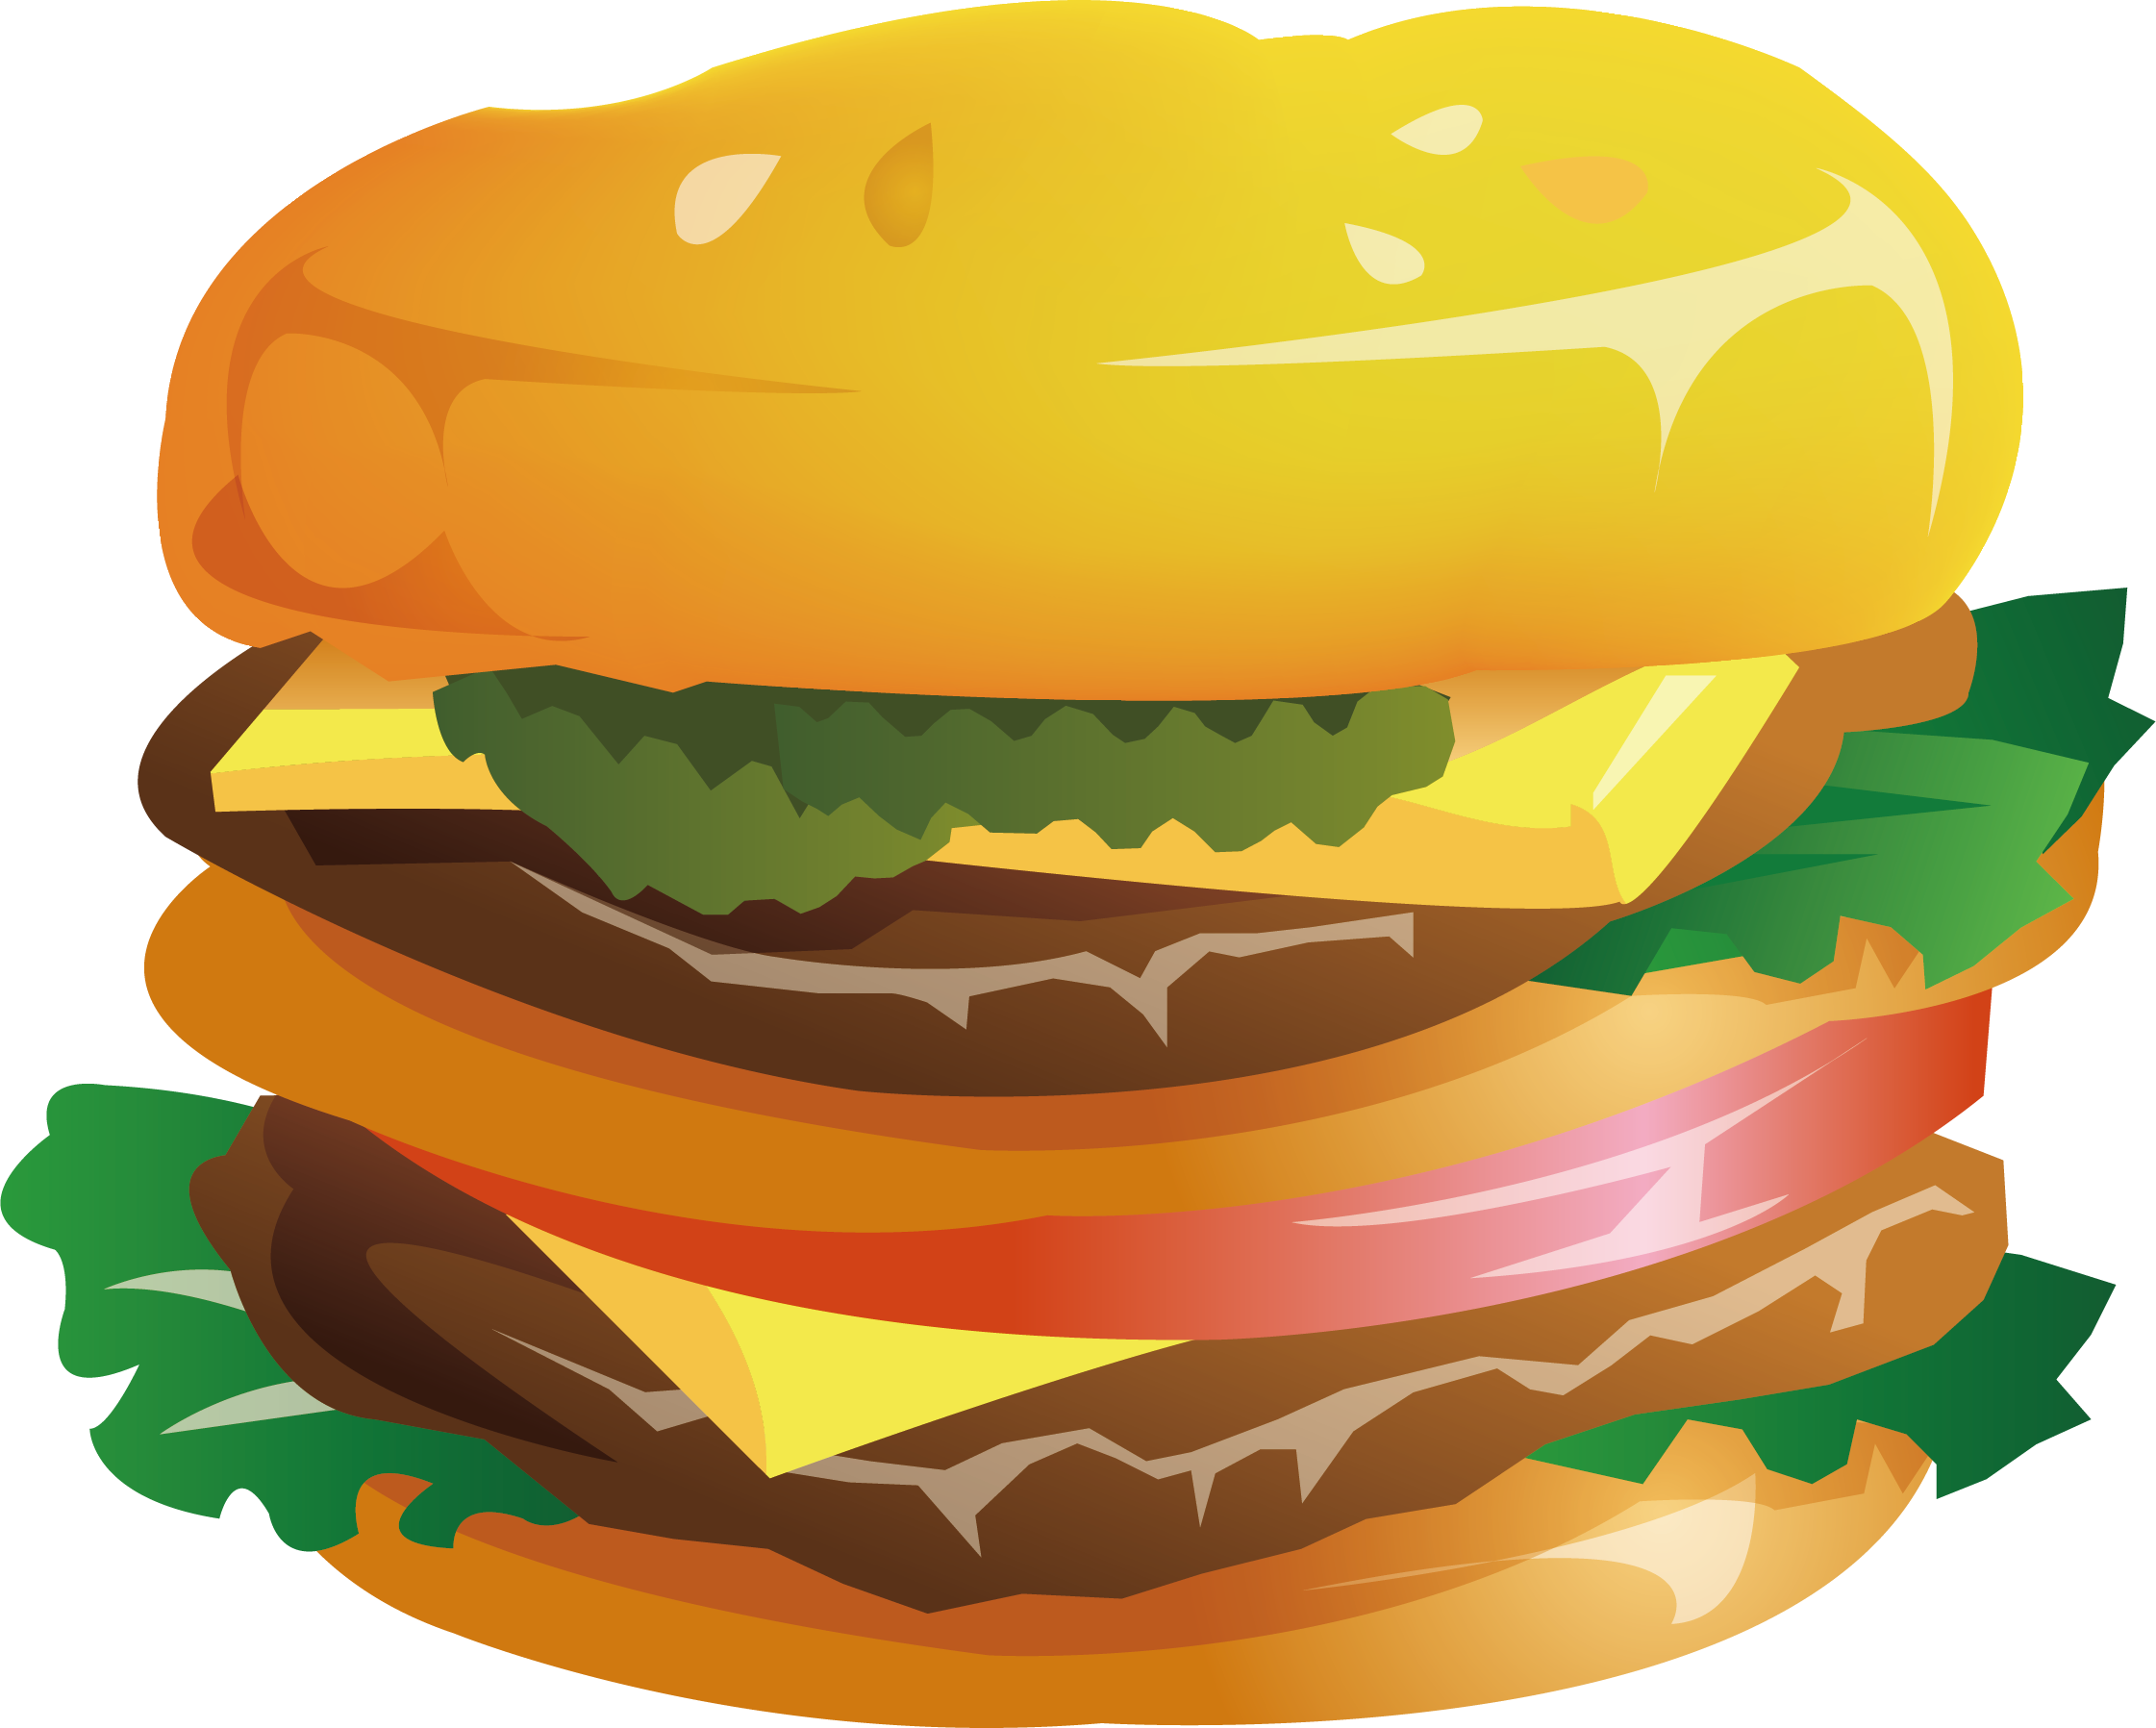 Iconic Big Mac Burger Illustration